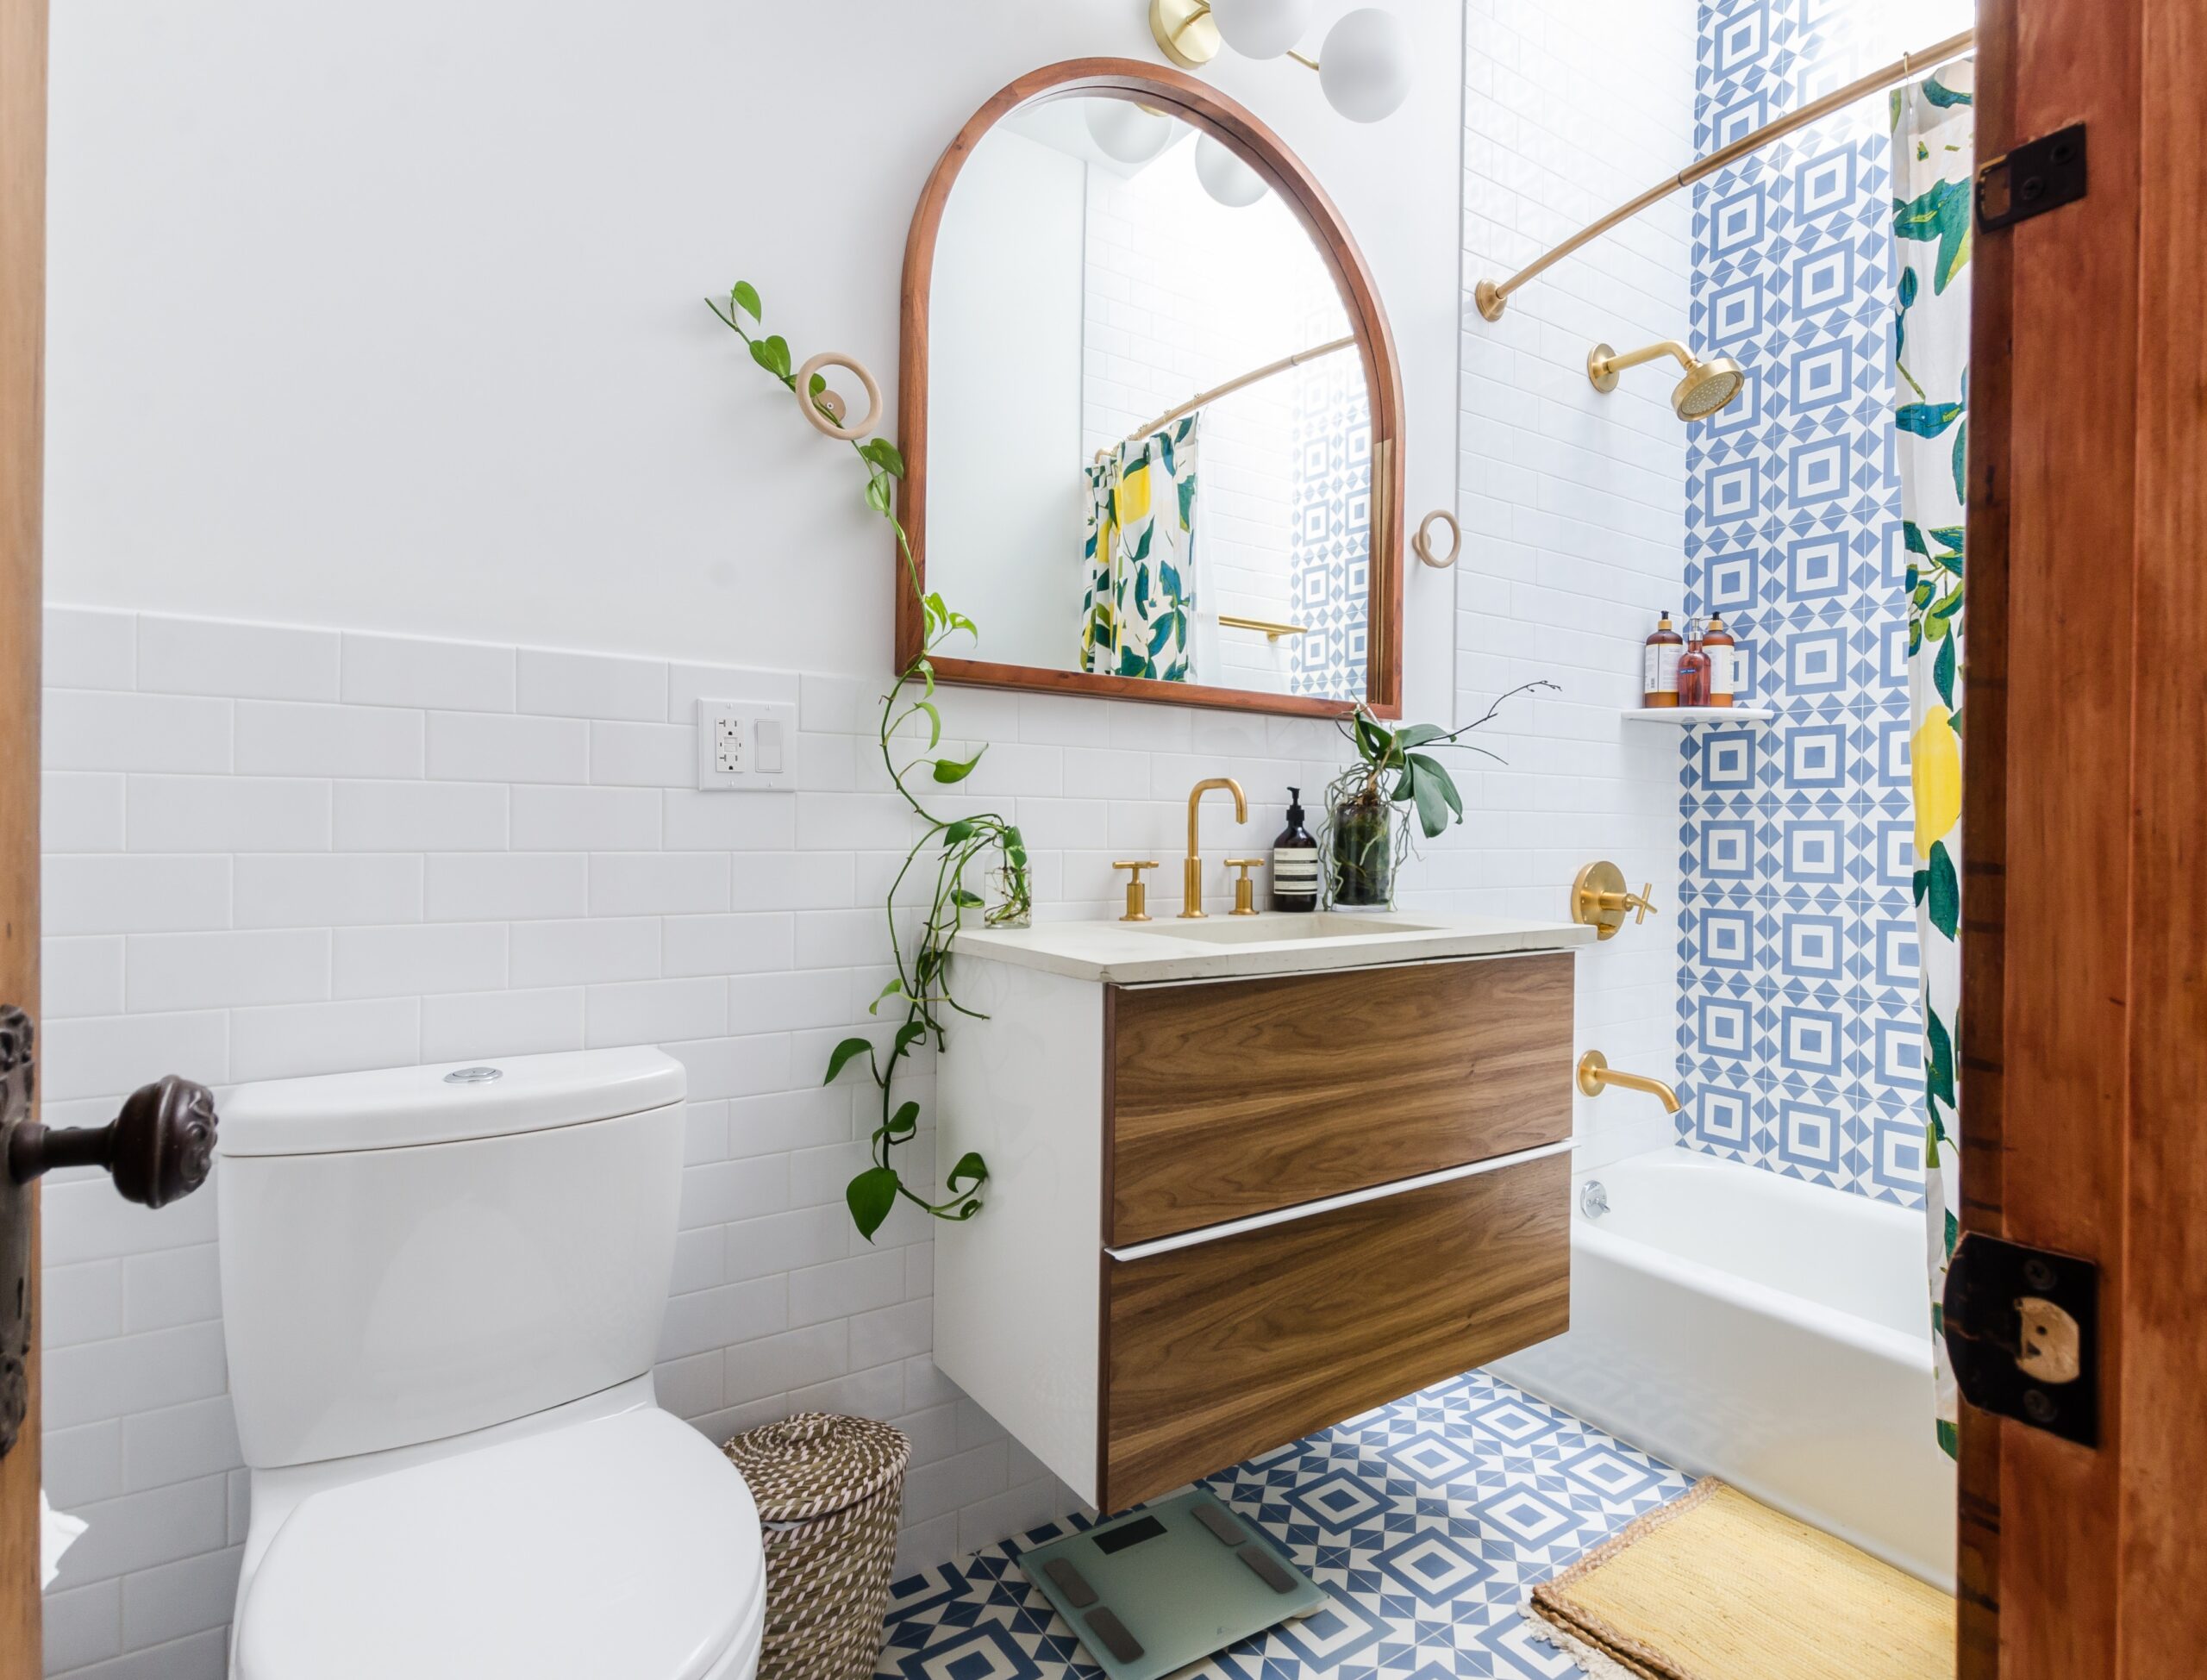 Bilden visar ett badrum med badkar. En badkarsblandare med dusch skapar en skön och avkopplande badrumsmiljö.